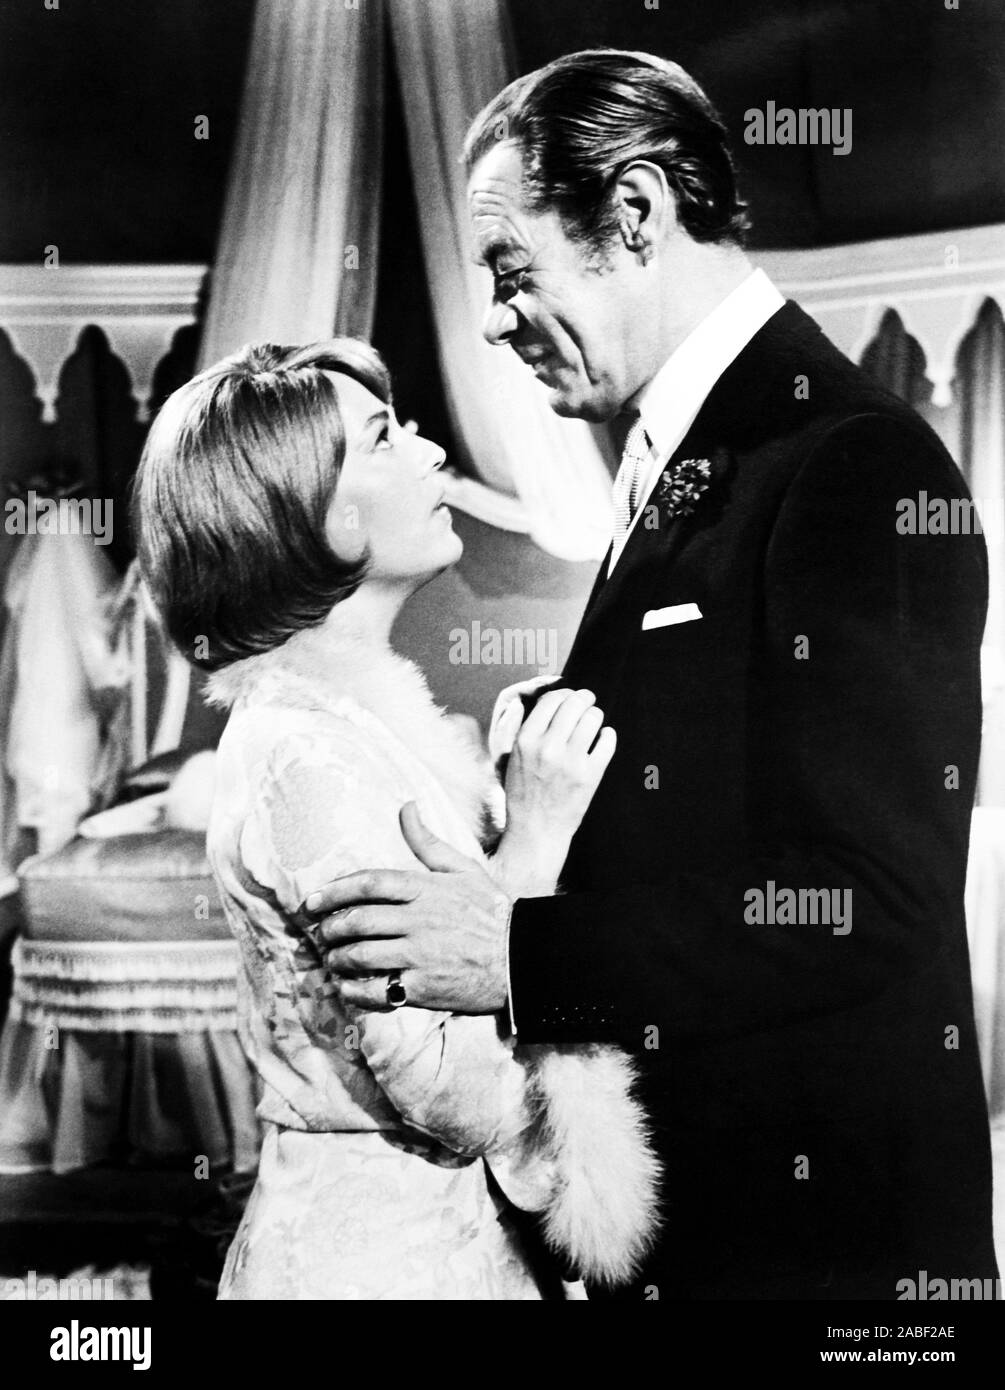 El Amarillo ROLLS-ROYCE, desde la izquierda, Jeanne Moreau, Rex Harrison, 1964 Foto de stock